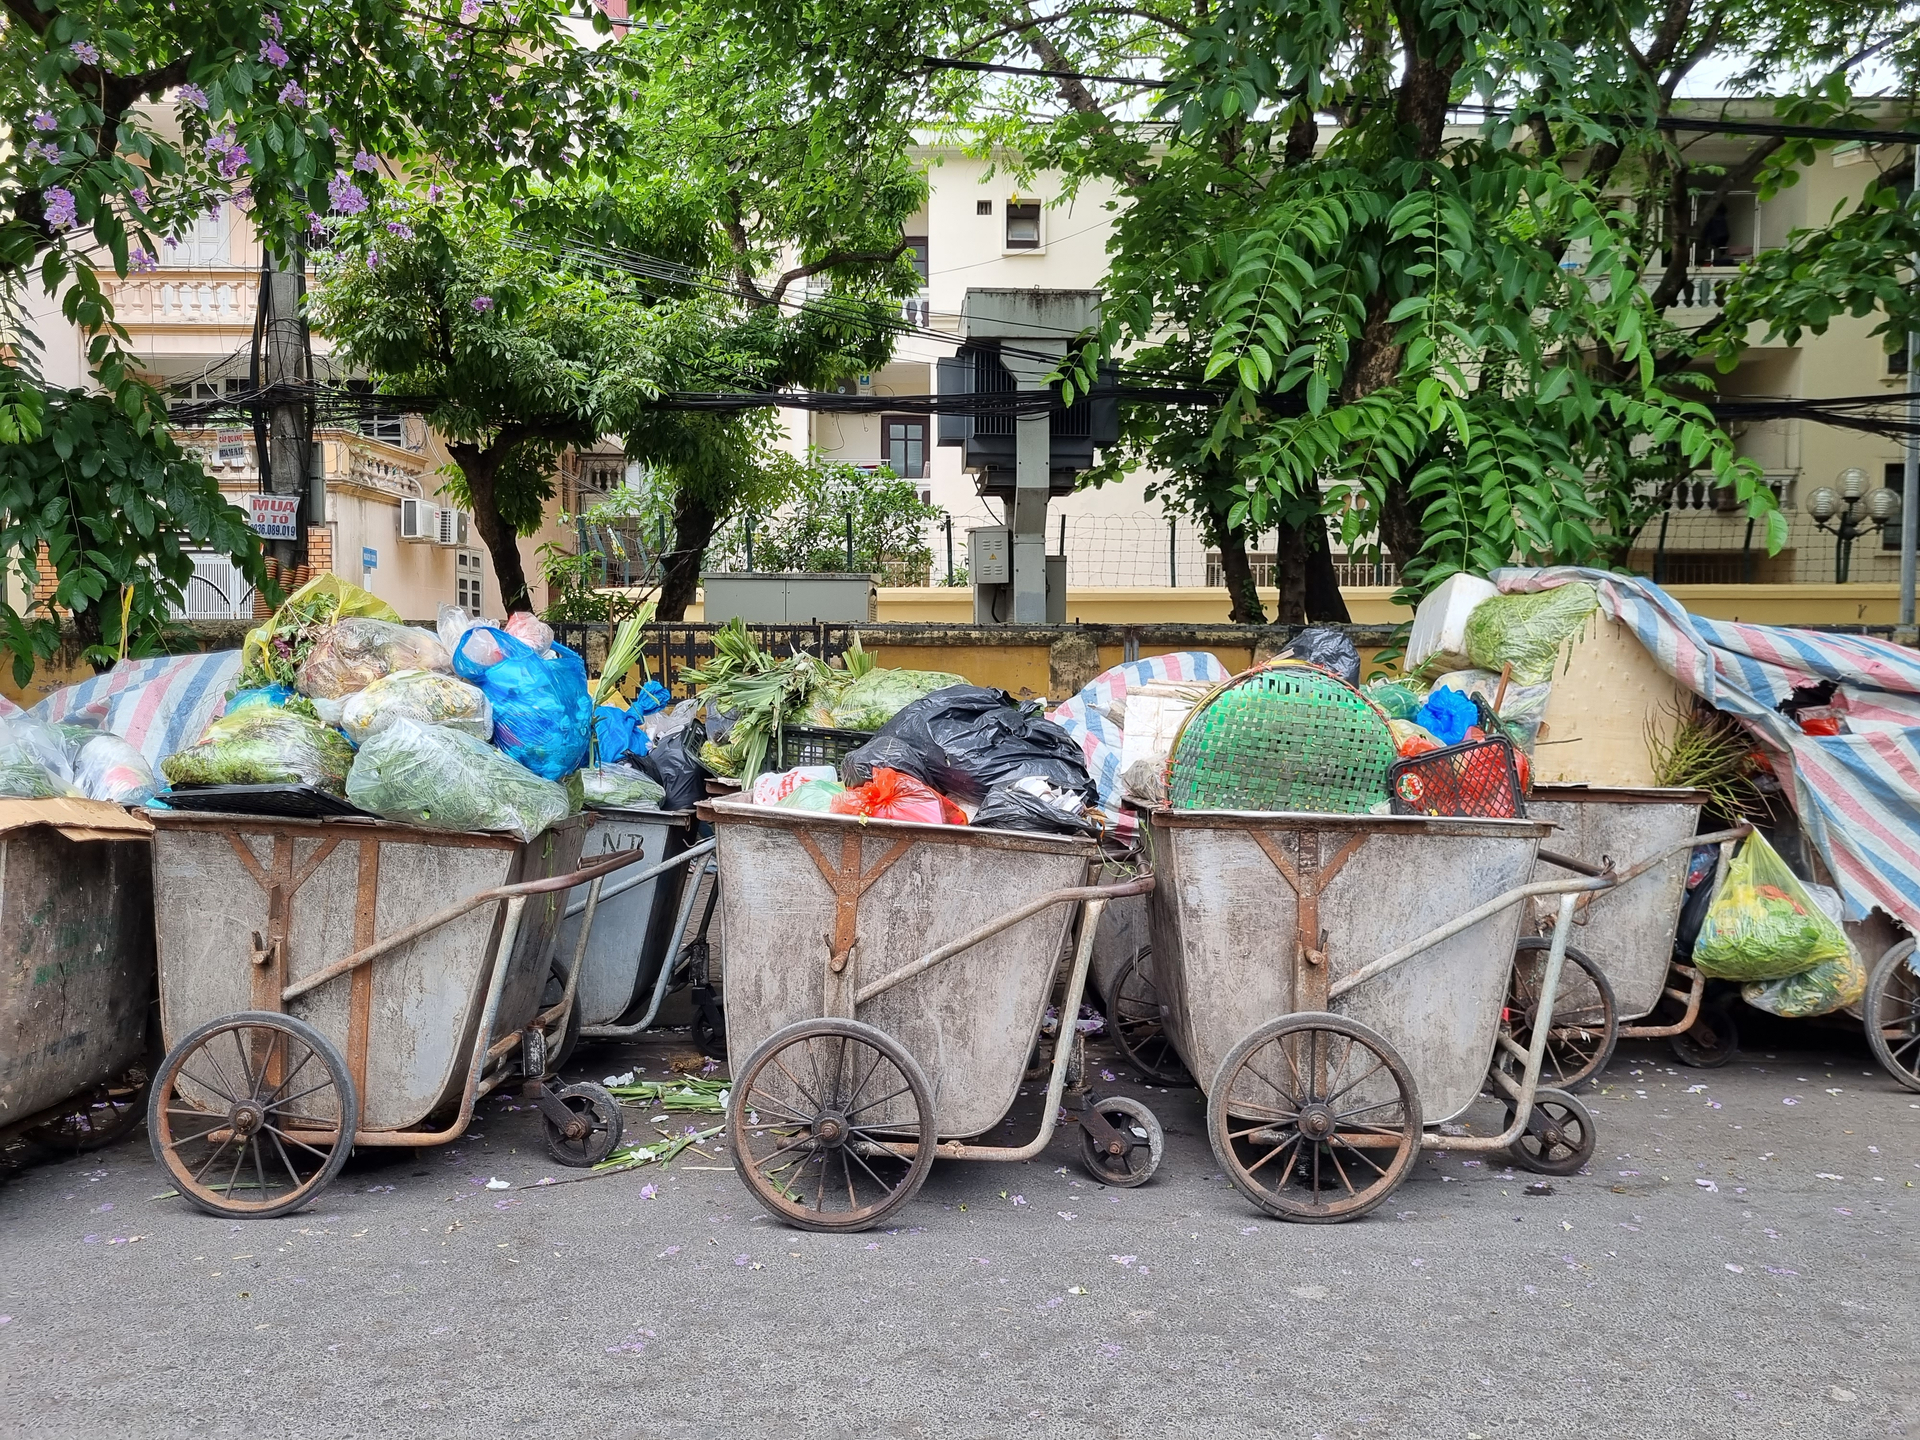 Nhiều công nhân vệ sinh môi trường băn khoăn, không biết sẽ thu gom, vận chuyển rác đã được phân loại thế nào khi tất cả rác hiện nay đều được dồn chung vào xe đẩy (Ảnh - Minh Hiếu)